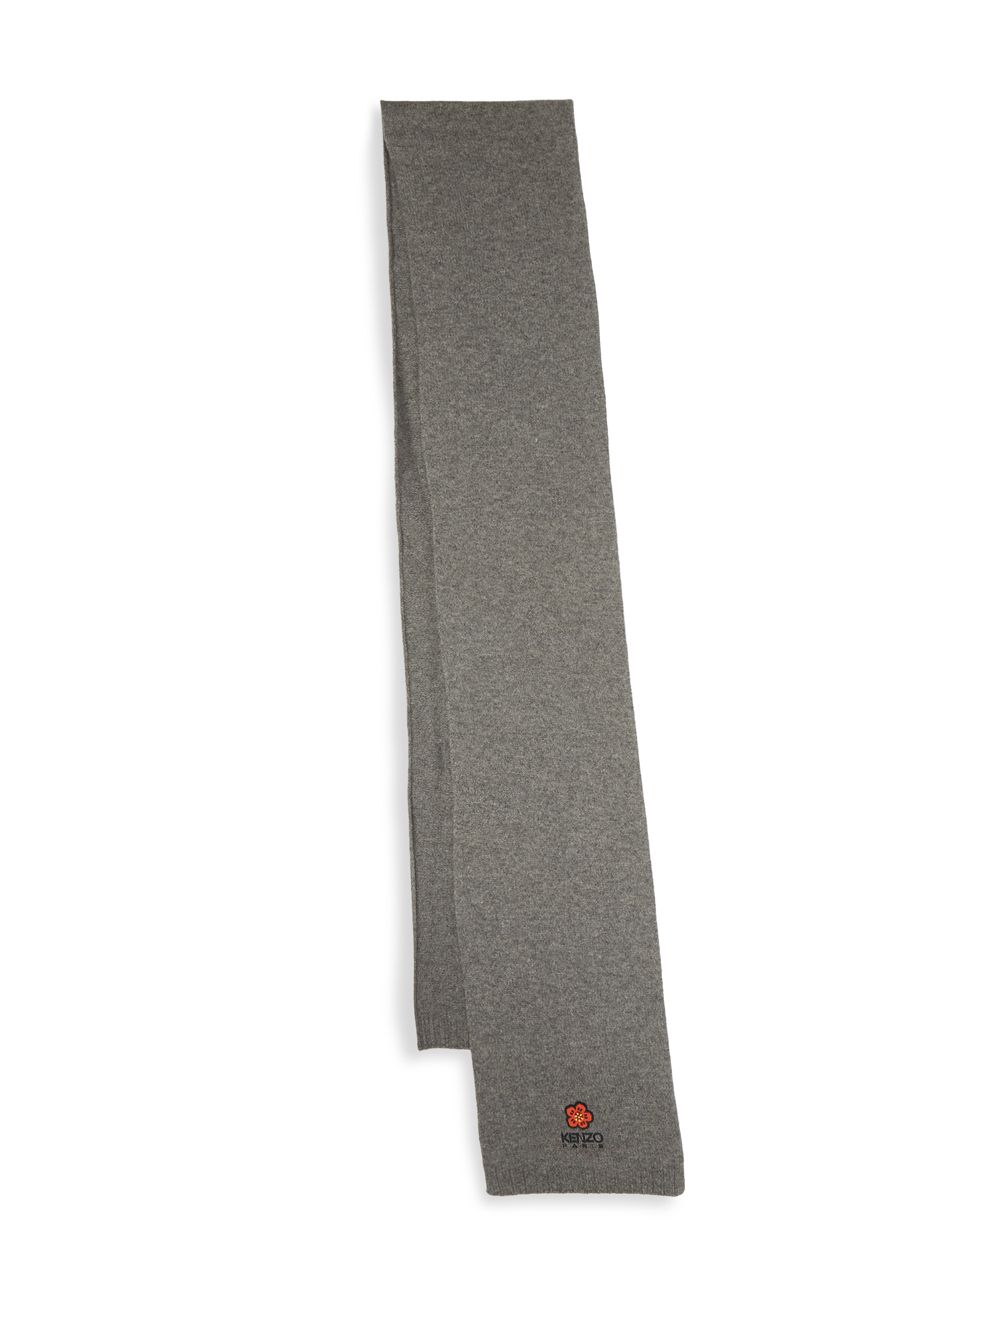 Шерстяной шарф с логотипом Poppy KENZO, серый полосатый шерстяной шарф kenzo черный